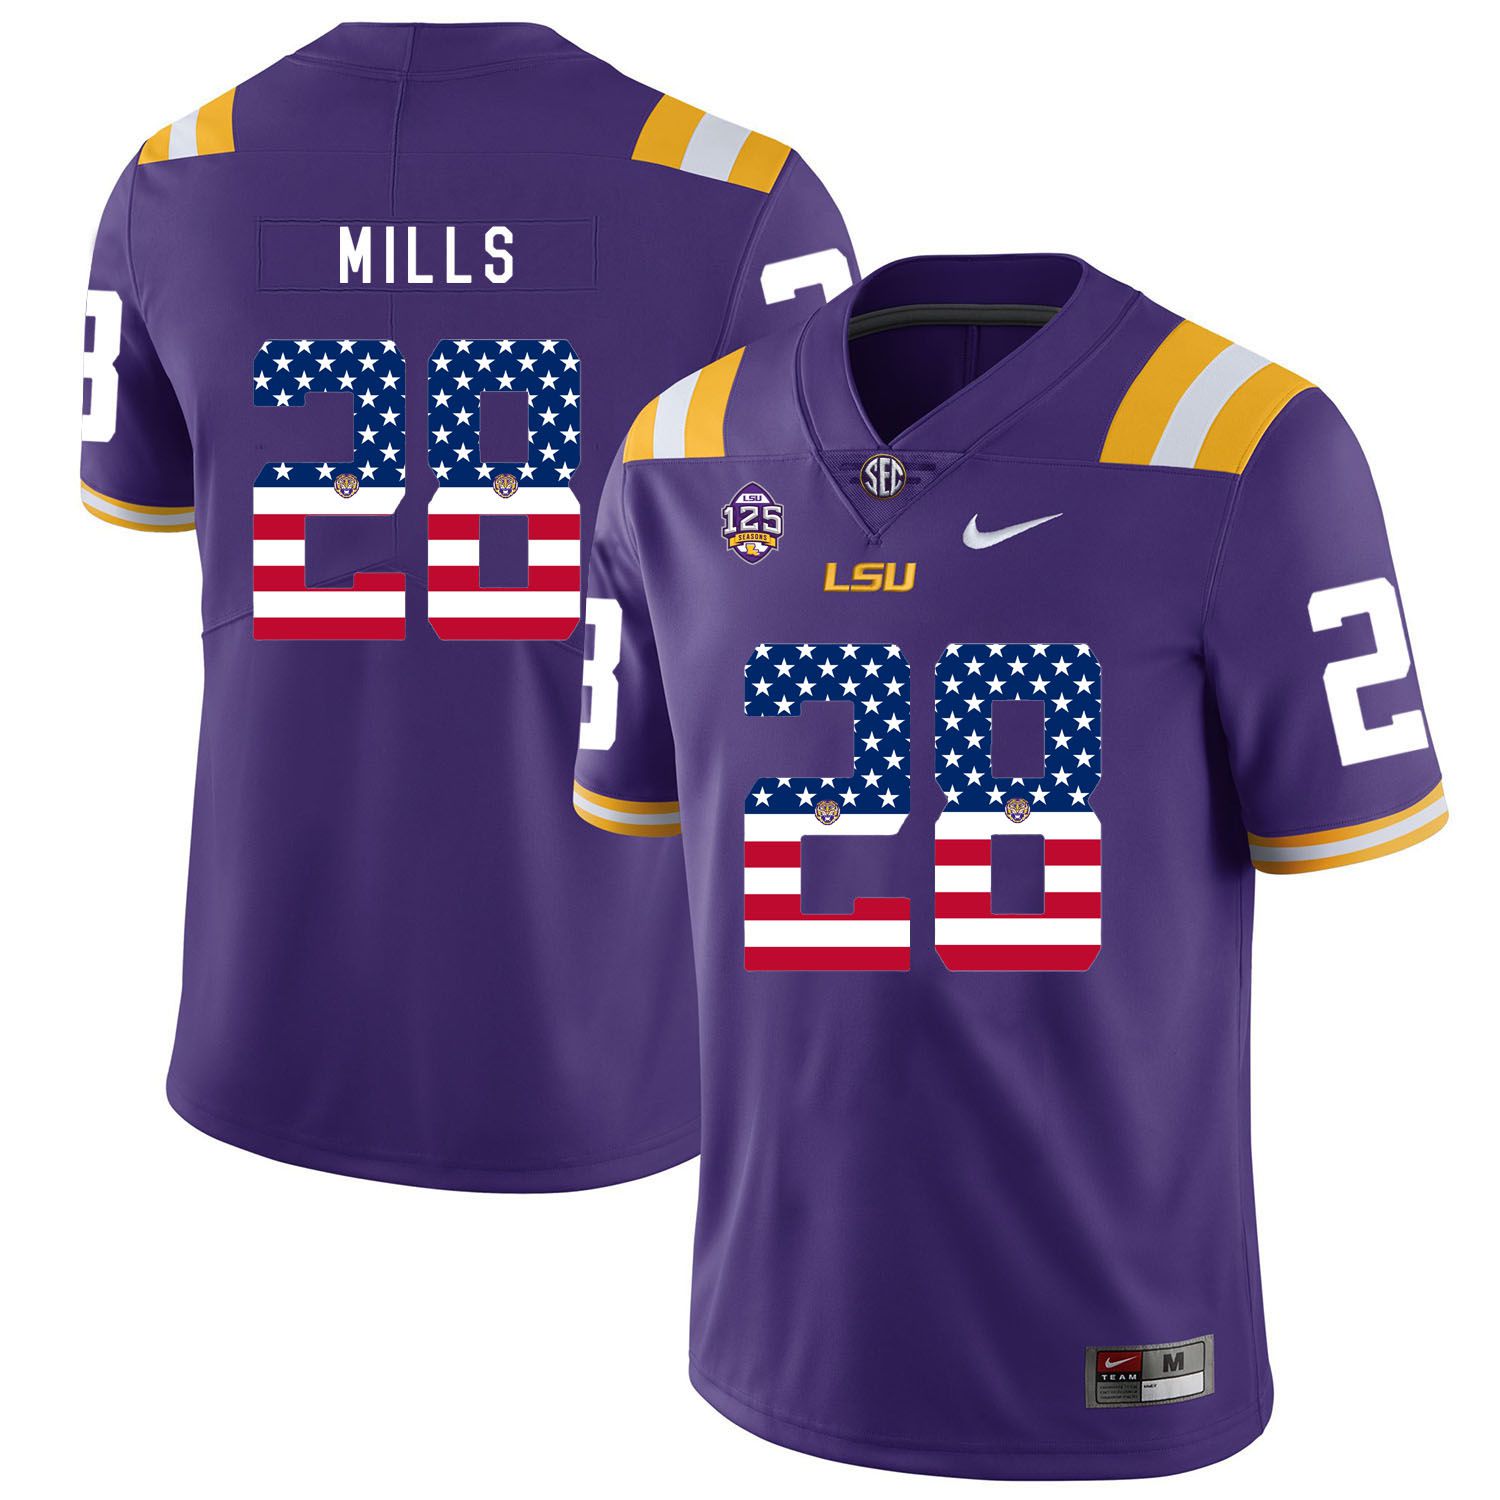 Men LSU Tigers 28 Mills Purple Flag Customized NCAA Jerseys